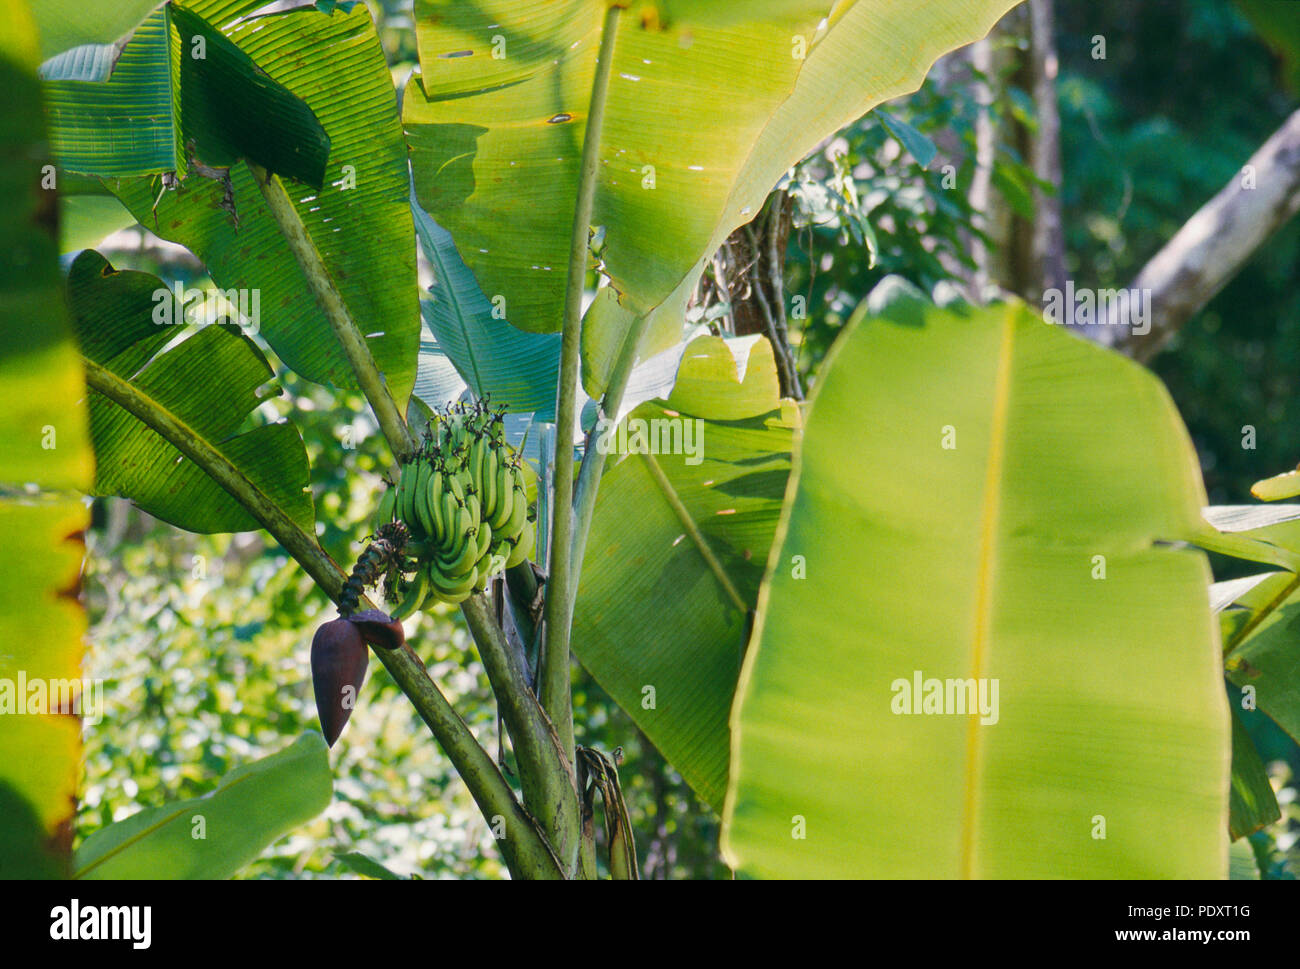 Bananen wachsen wild in der Nähe des Rio Tarcoles, Costa Rica. Foto Stockfoto